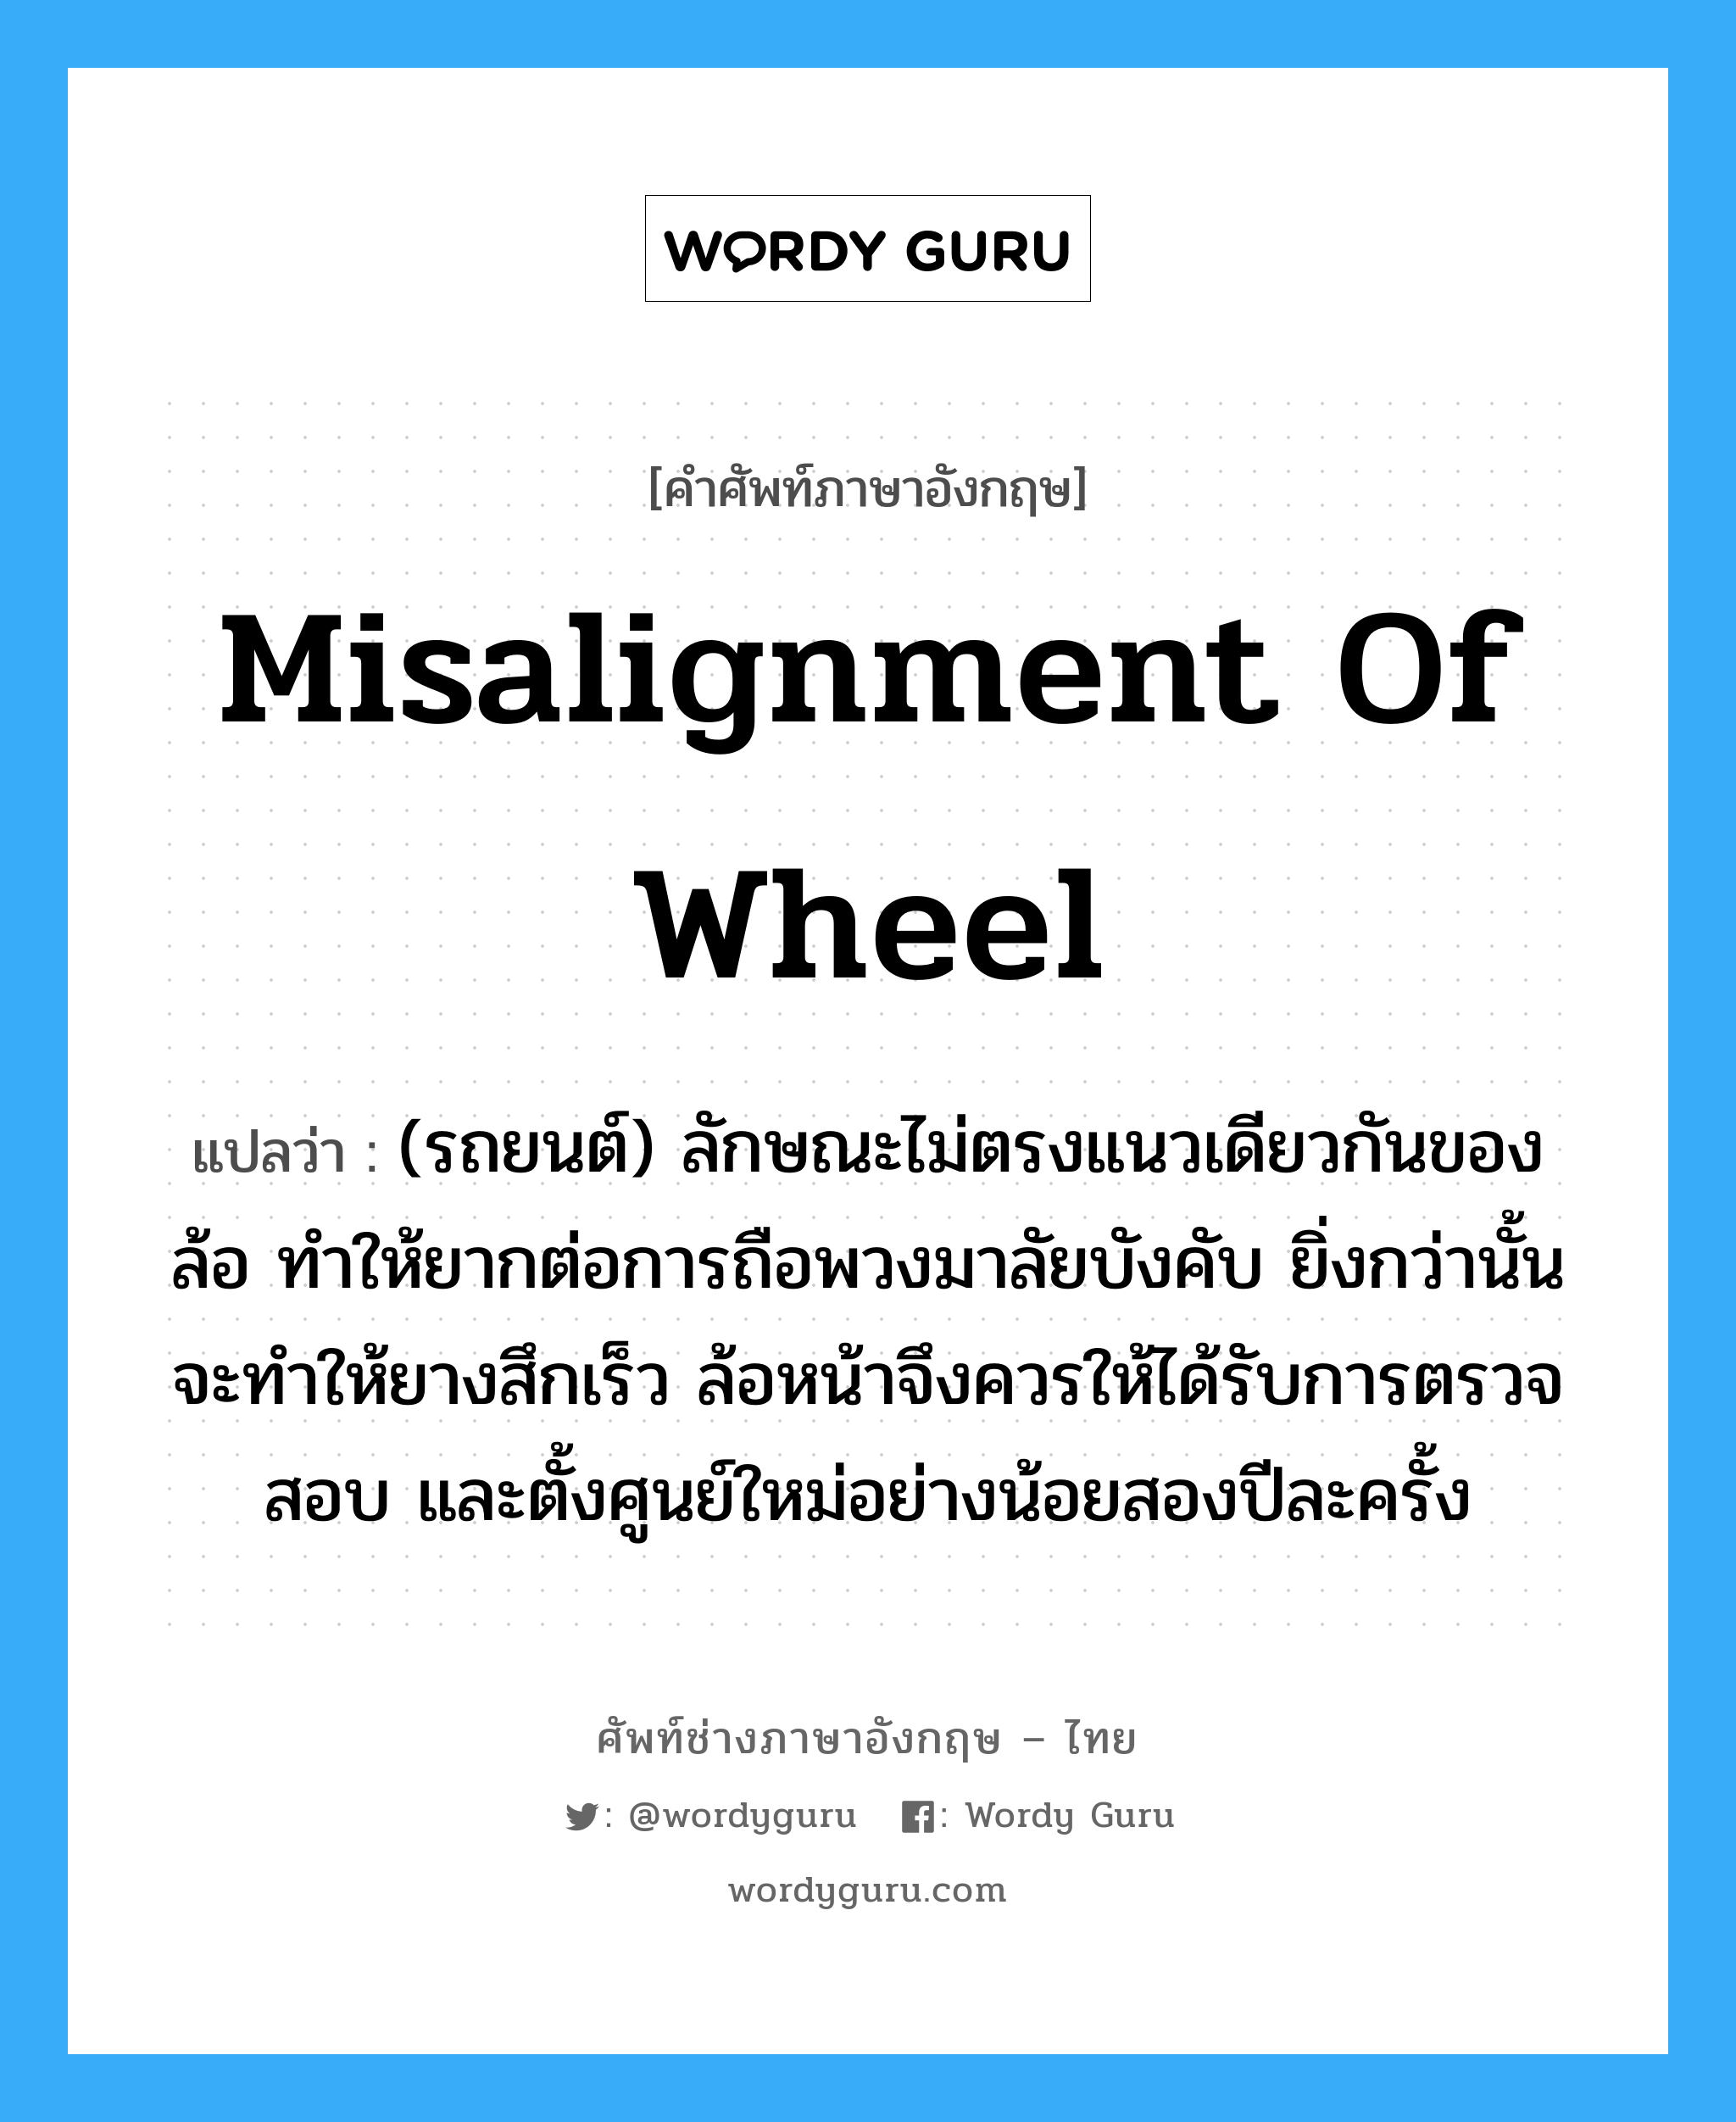 misalignment of wheel แปลว่า?, คำศัพท์ช่างภาษาอังกฤษ - ไทย misalignment of wheel คำศัพท์ภาษาอังกฤษ misalignment of wheel แปลว่า (รถยนต์) ลักษณะไม่ตรงแนวเดียวกันของล้อ ทำให้ยากต่อการถือพวงมาลัยบังคับ ยิ่งกว่านั้นจะทำให้ยางสึกเร็ว ล้อหน้าจึงควรให้ได้รับการตรวจสอบ และตั้งศูนย์ใหม่อย่างน้อยสองปีละครั้ง